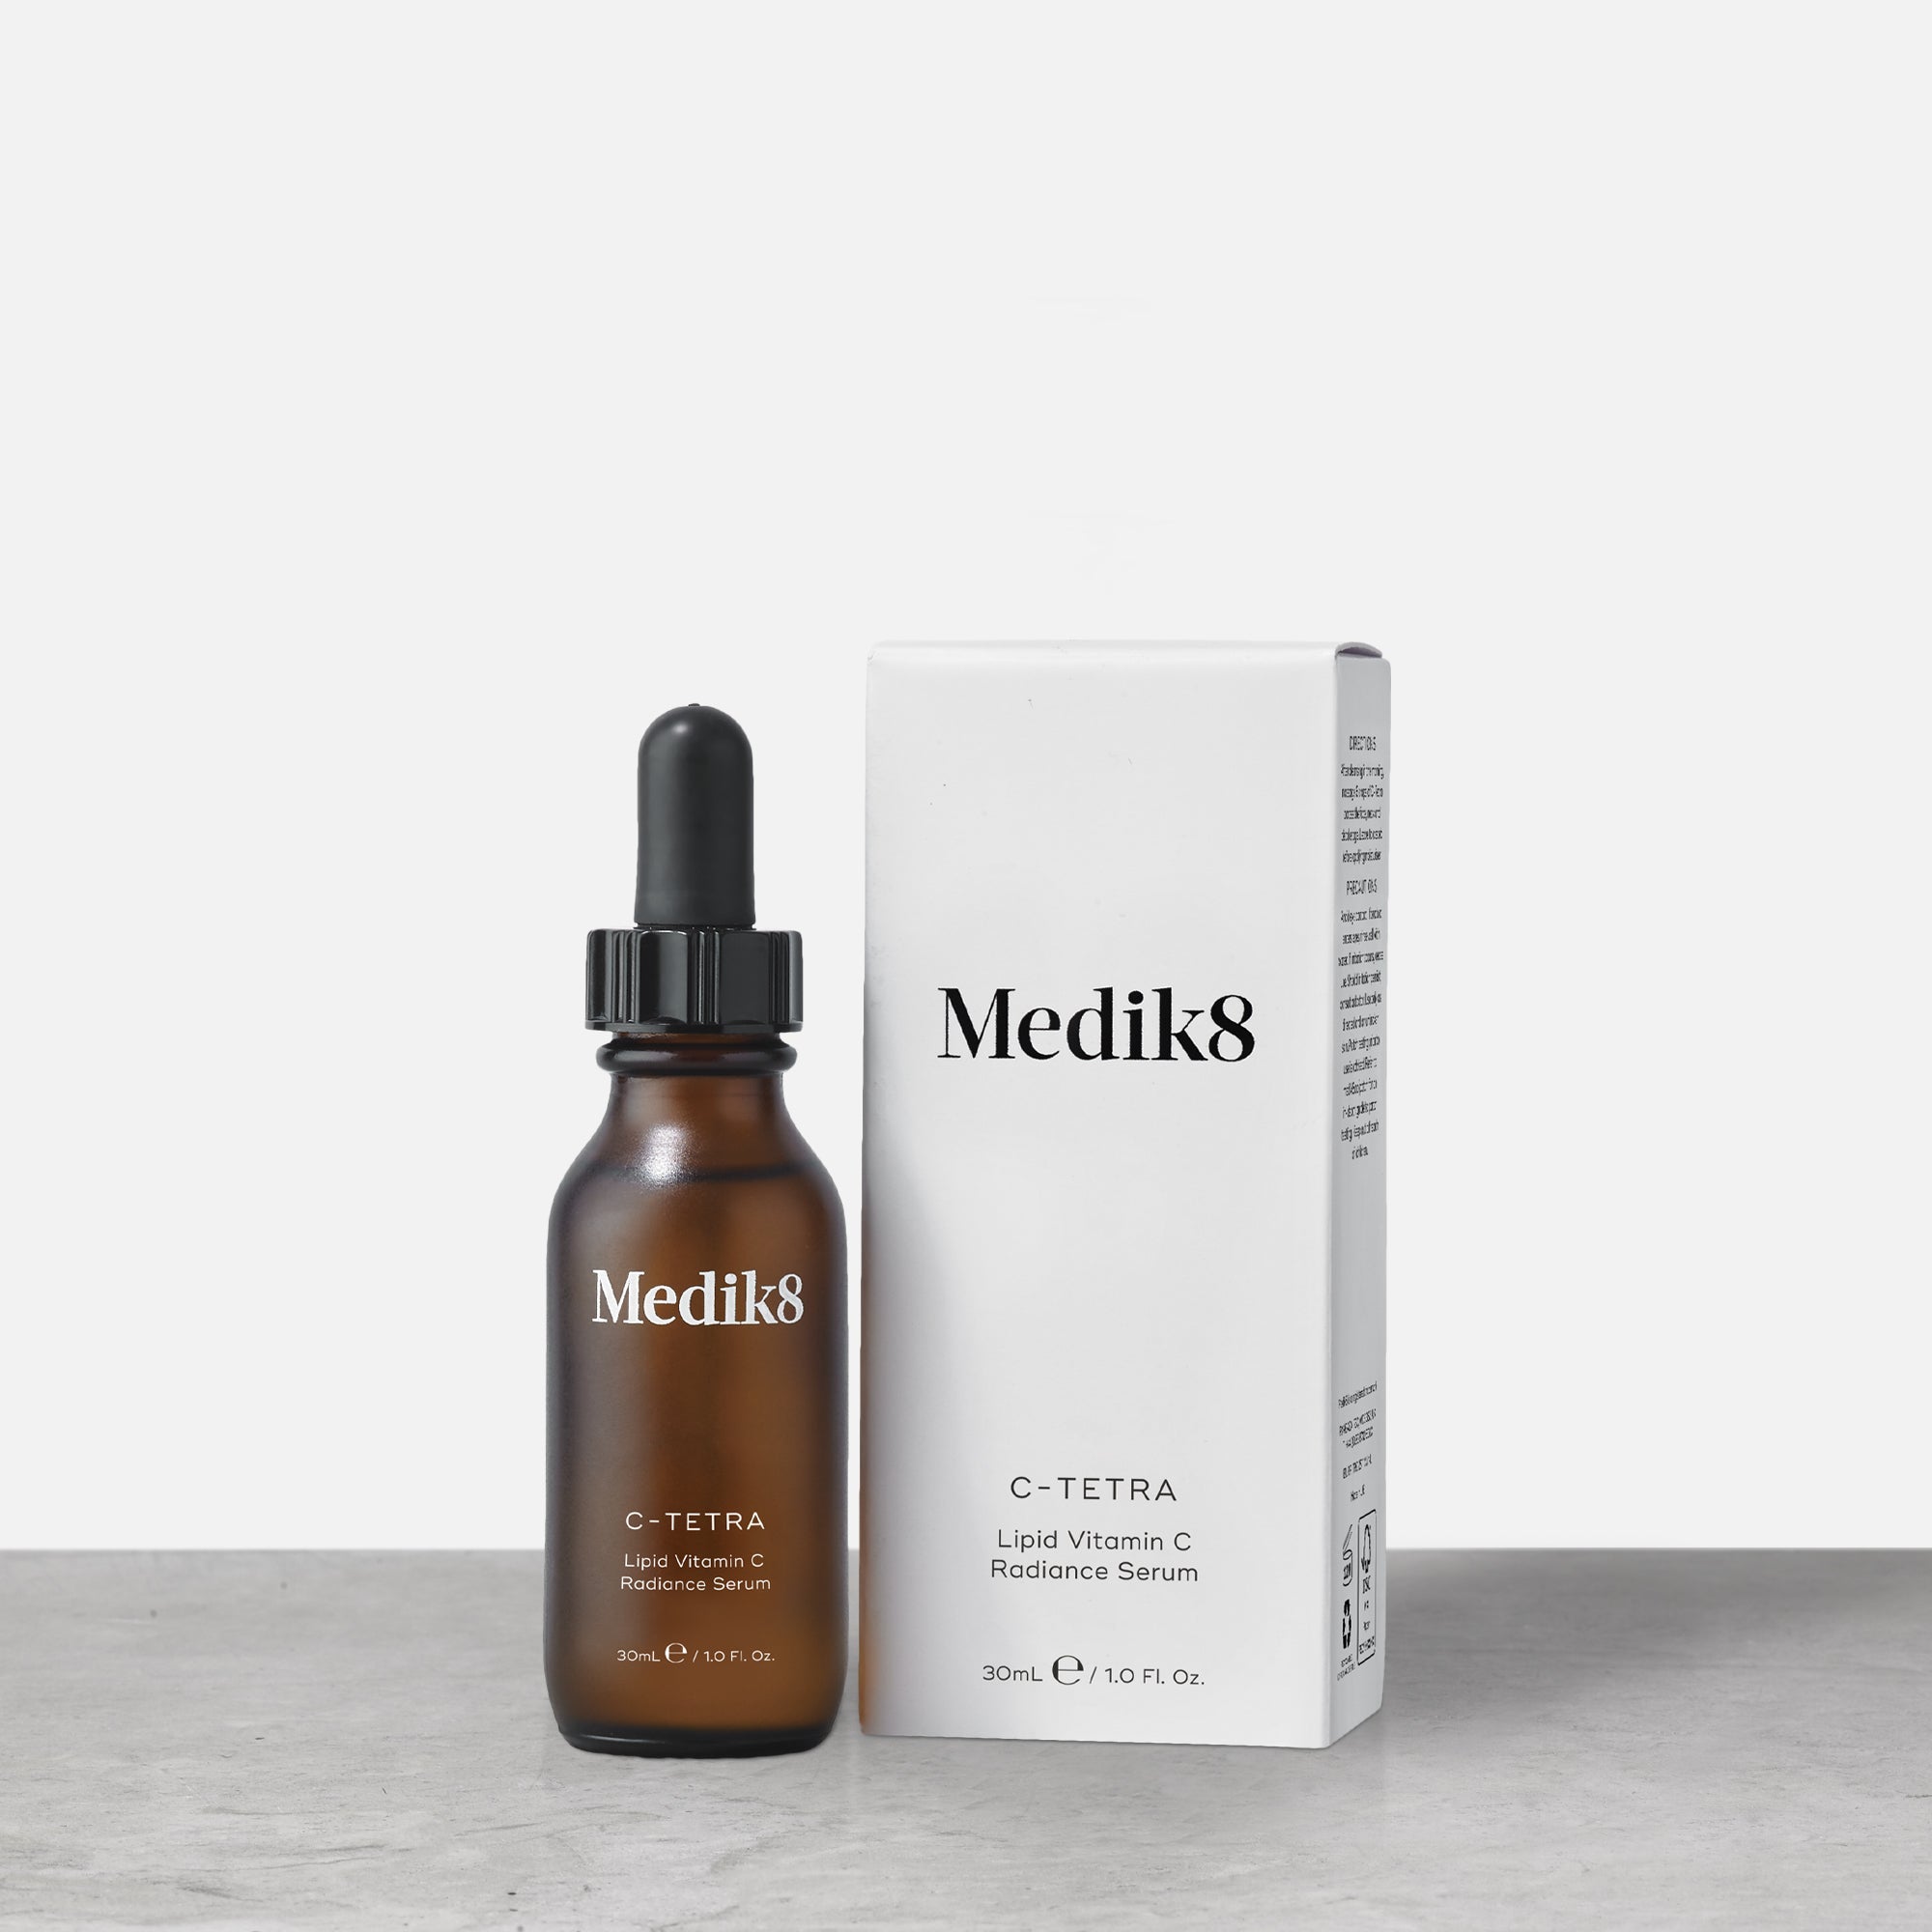 C-Tetra® by Medik8.  A antioxidant vitamin C for brightening skin.